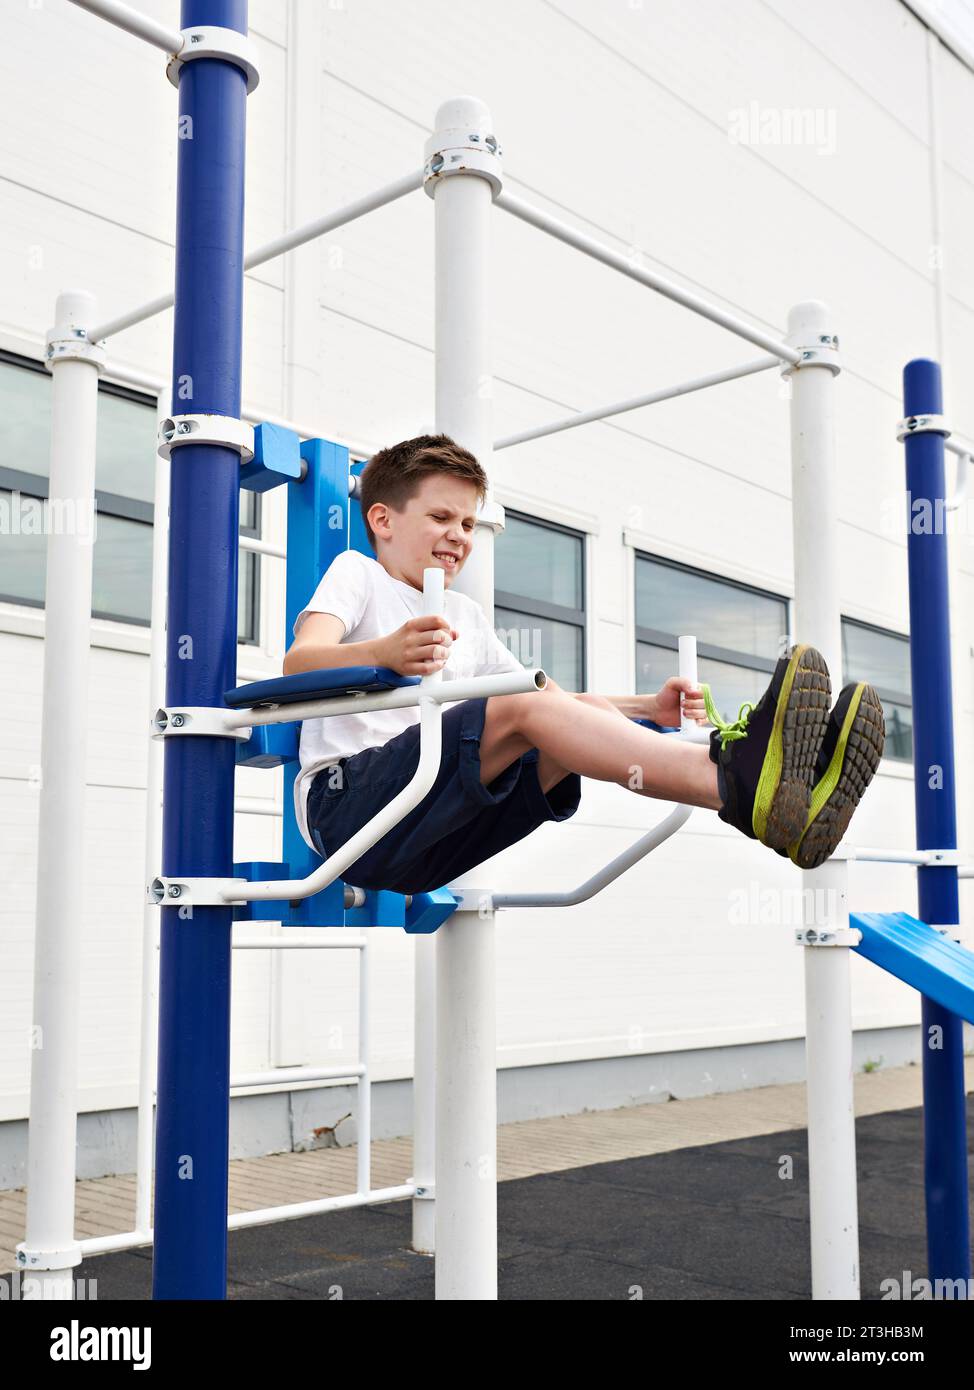 Junge macht Übungen an den Fitnessbars auf dem Sportplatz Stockfoto